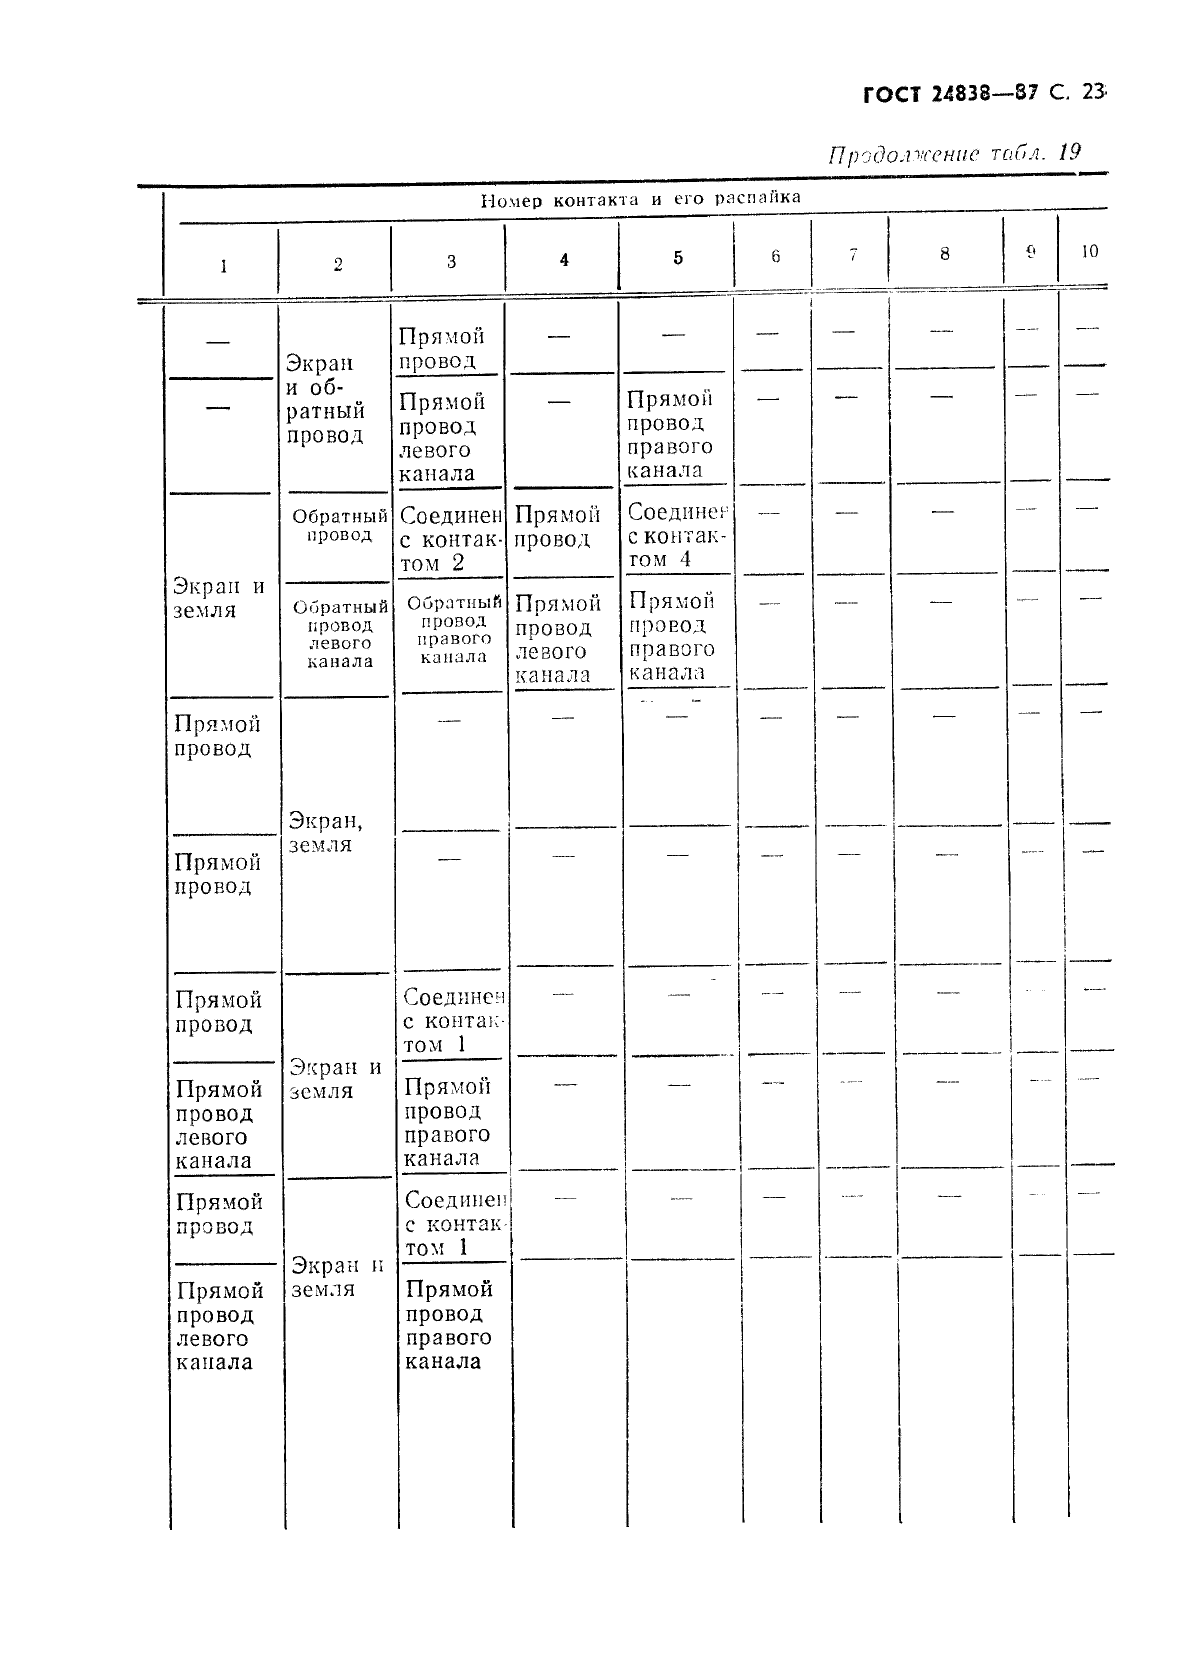 ГОСТ 24838-87 Аппаратура радиоэлектронная бытовая. Входные и выходные параметры (фото 24 из 41)